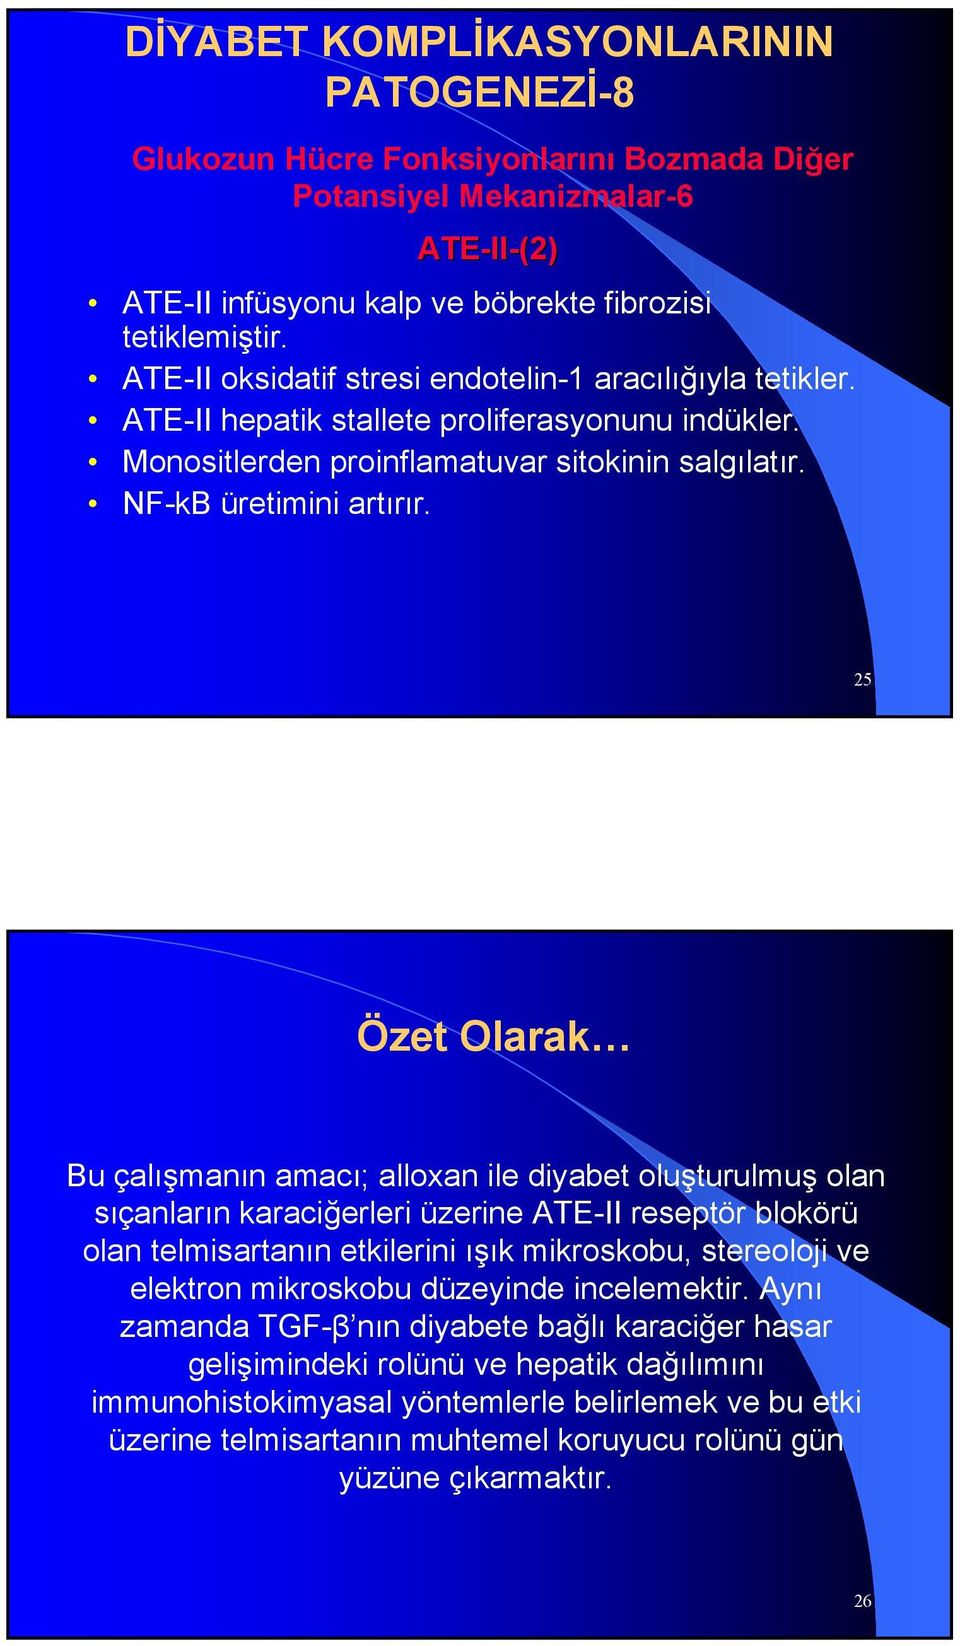 25 Özet Olarak Bu çalışmanın amacı; alloxan ile diyabet oluşturulmuş olan sıçanların karaciğerleri üzerine ATE-II reseptör blokörü olan telmisartanın etkilerini ışık mikroskobu, stereoloji ve